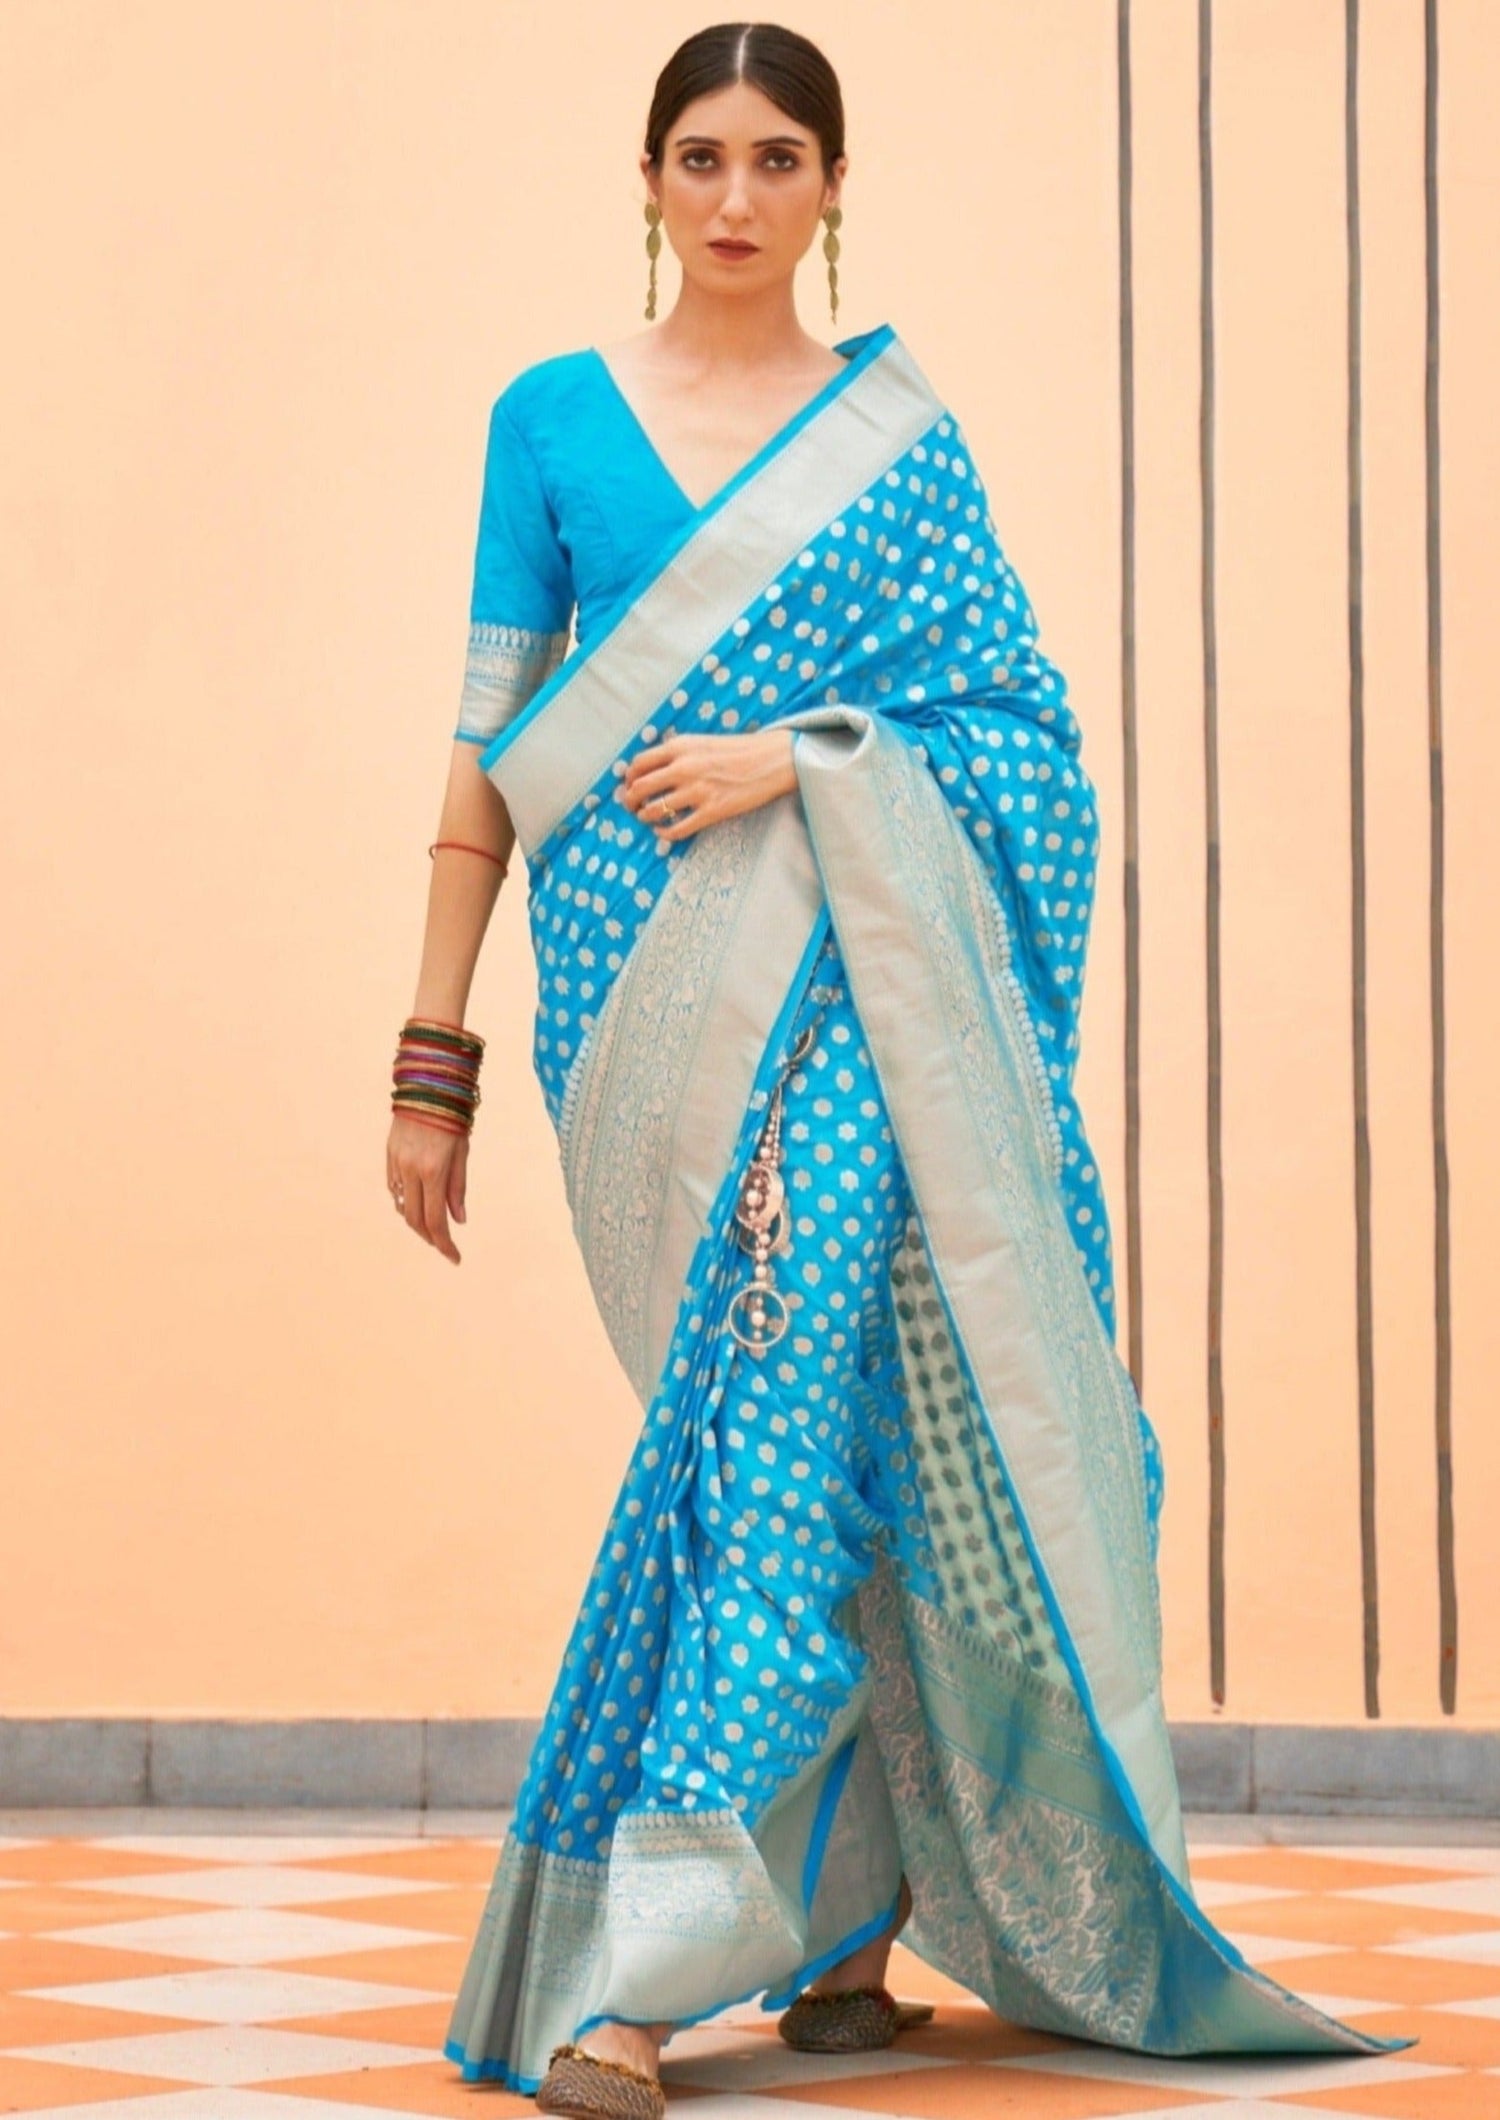 Discover more than 166 new design banarasi saree super hot